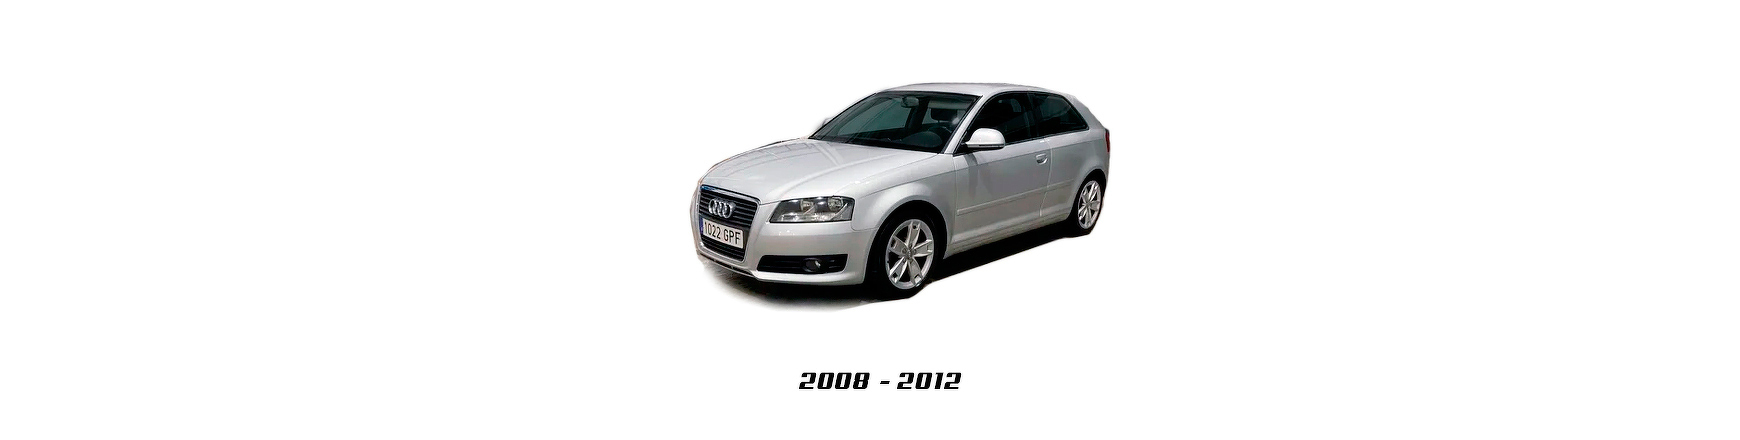 Piezas y Recambios de Audi A3 (8P) de 2008 a 2012 | Veramauto.es